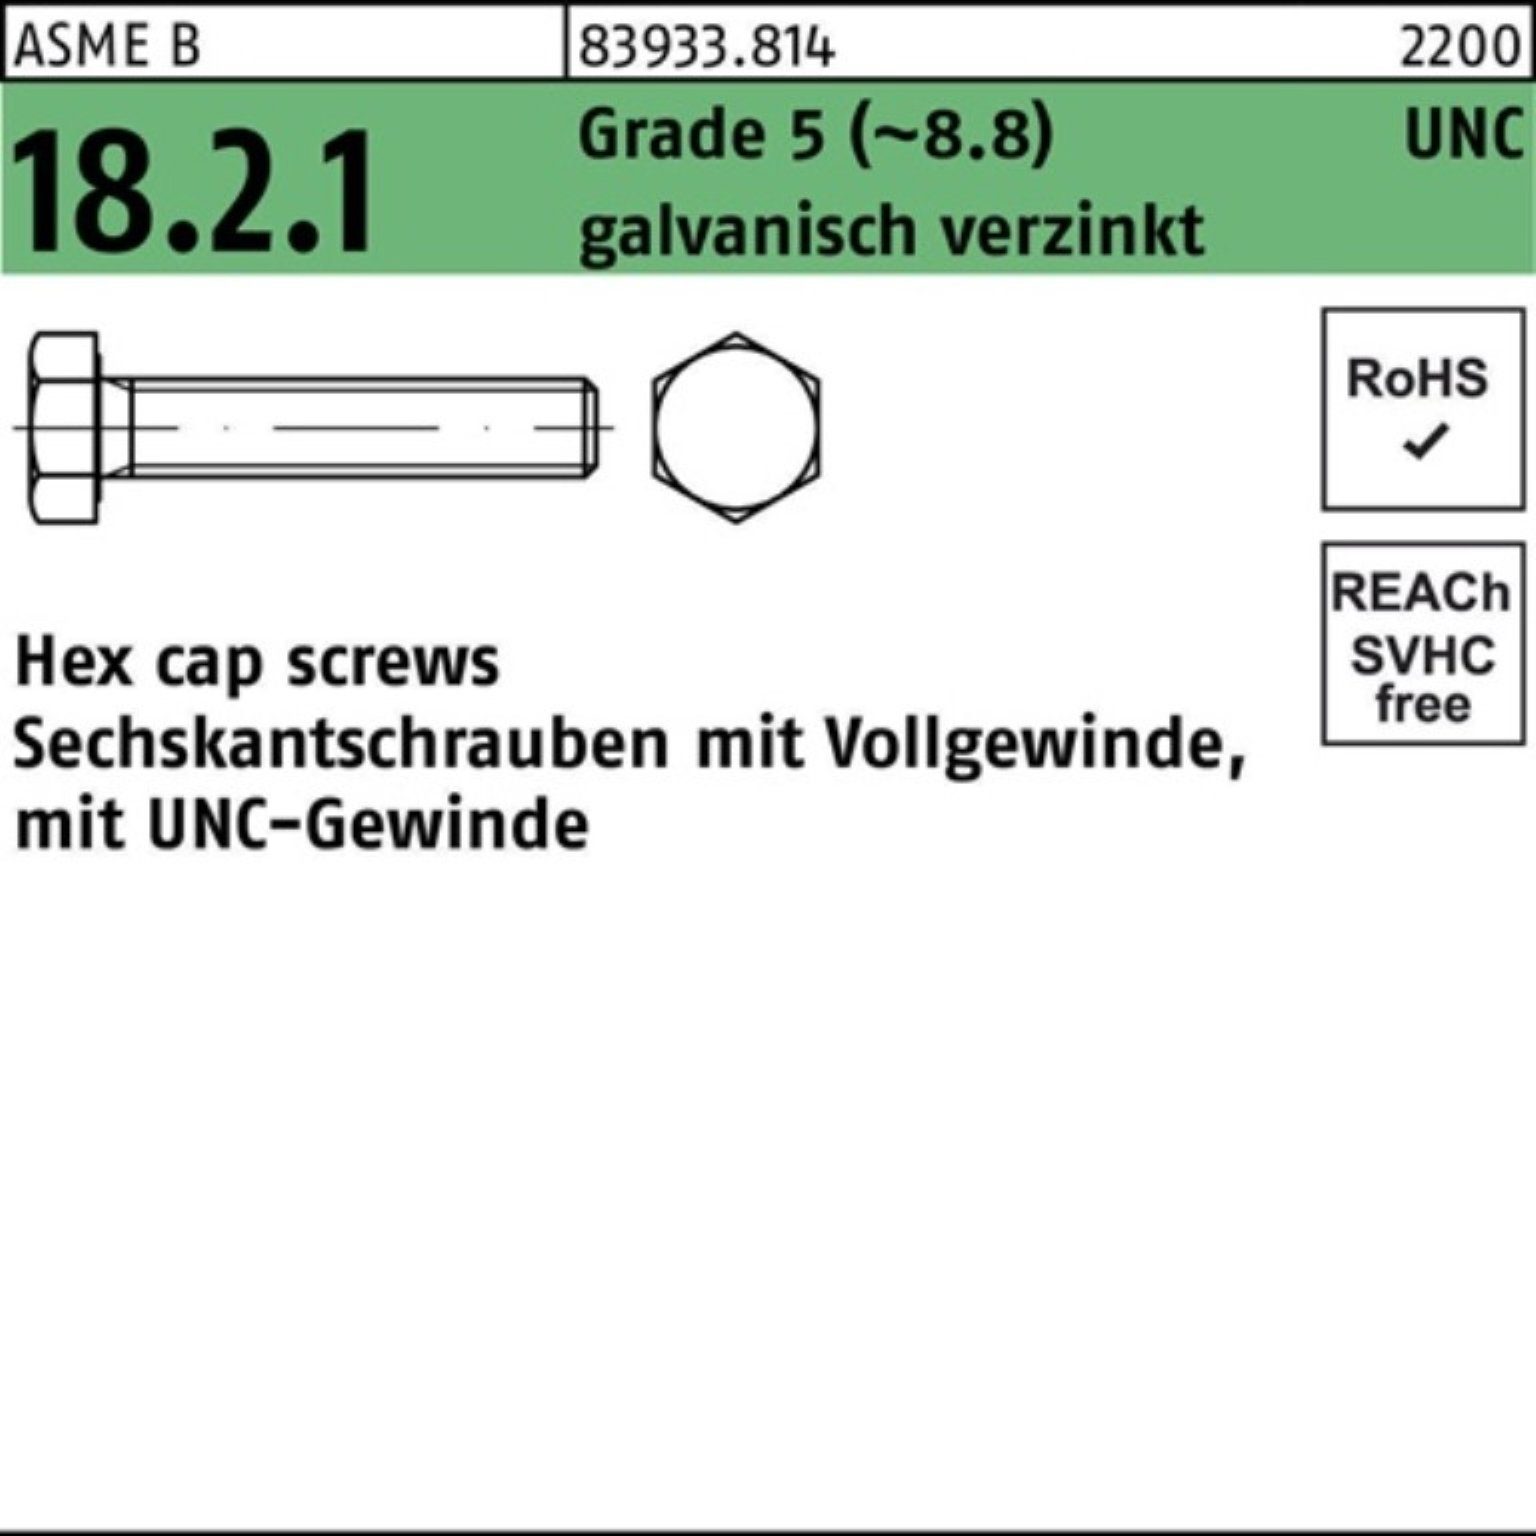 Reyher Sechskantschraube 100er Pack Sechskantschraube R 83933 UNC VG 5/8x1 1/2 Grade 5 (8.8) g